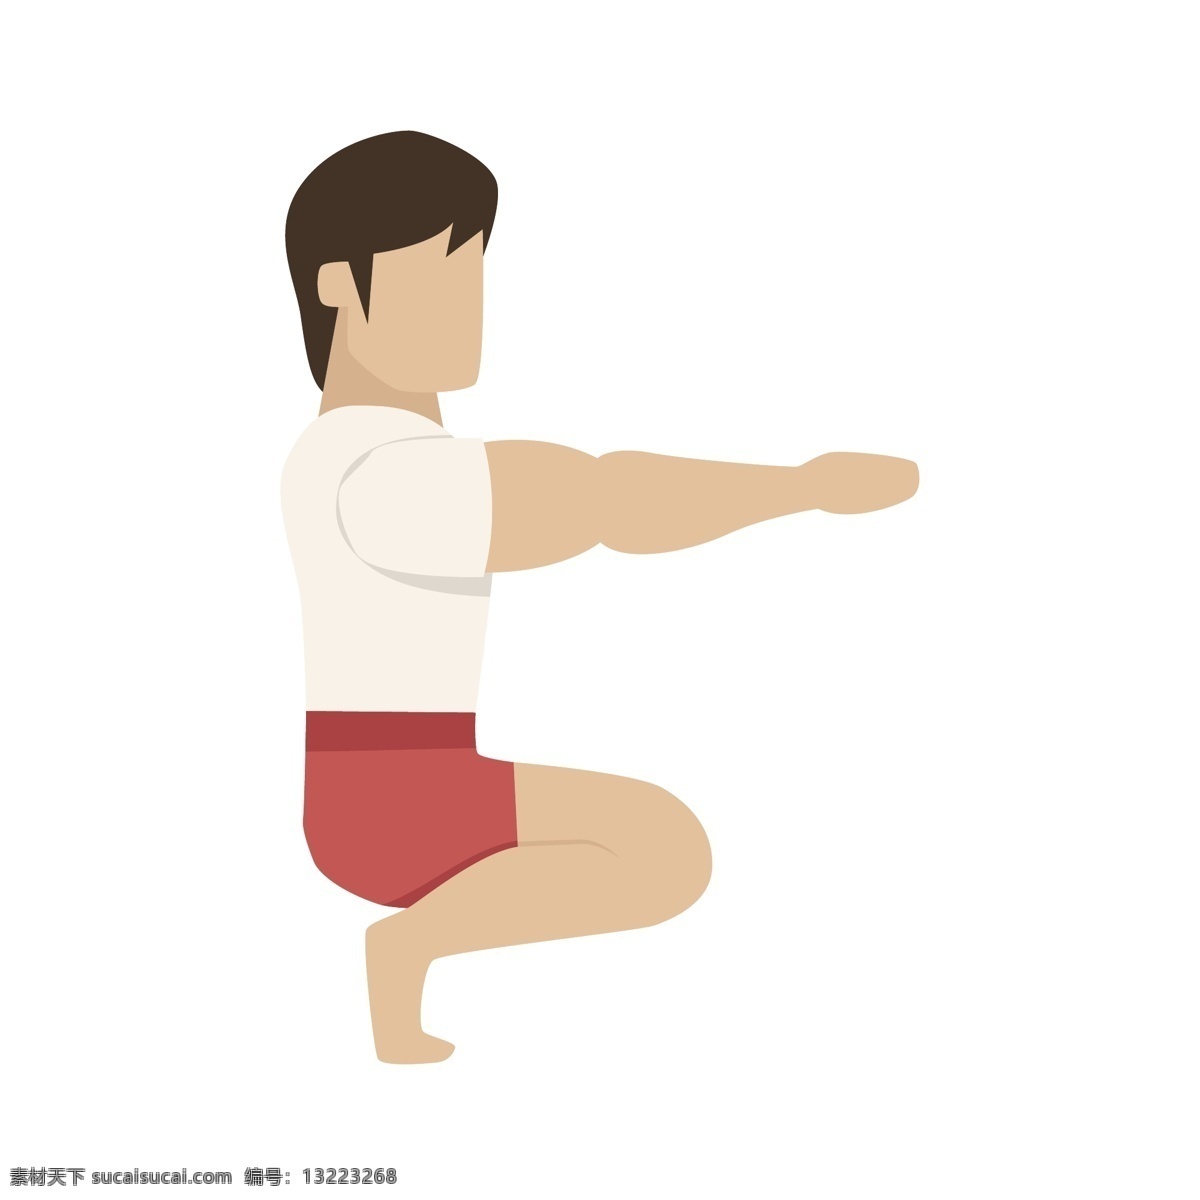 练 瑜伽 男人 矢量 瑜伽姿势 姿势 动作 动作姿势 卡通 卡通瑜伽 卡通男人 男性瑜伽 卡通男性瑜伽 瑜伽动作